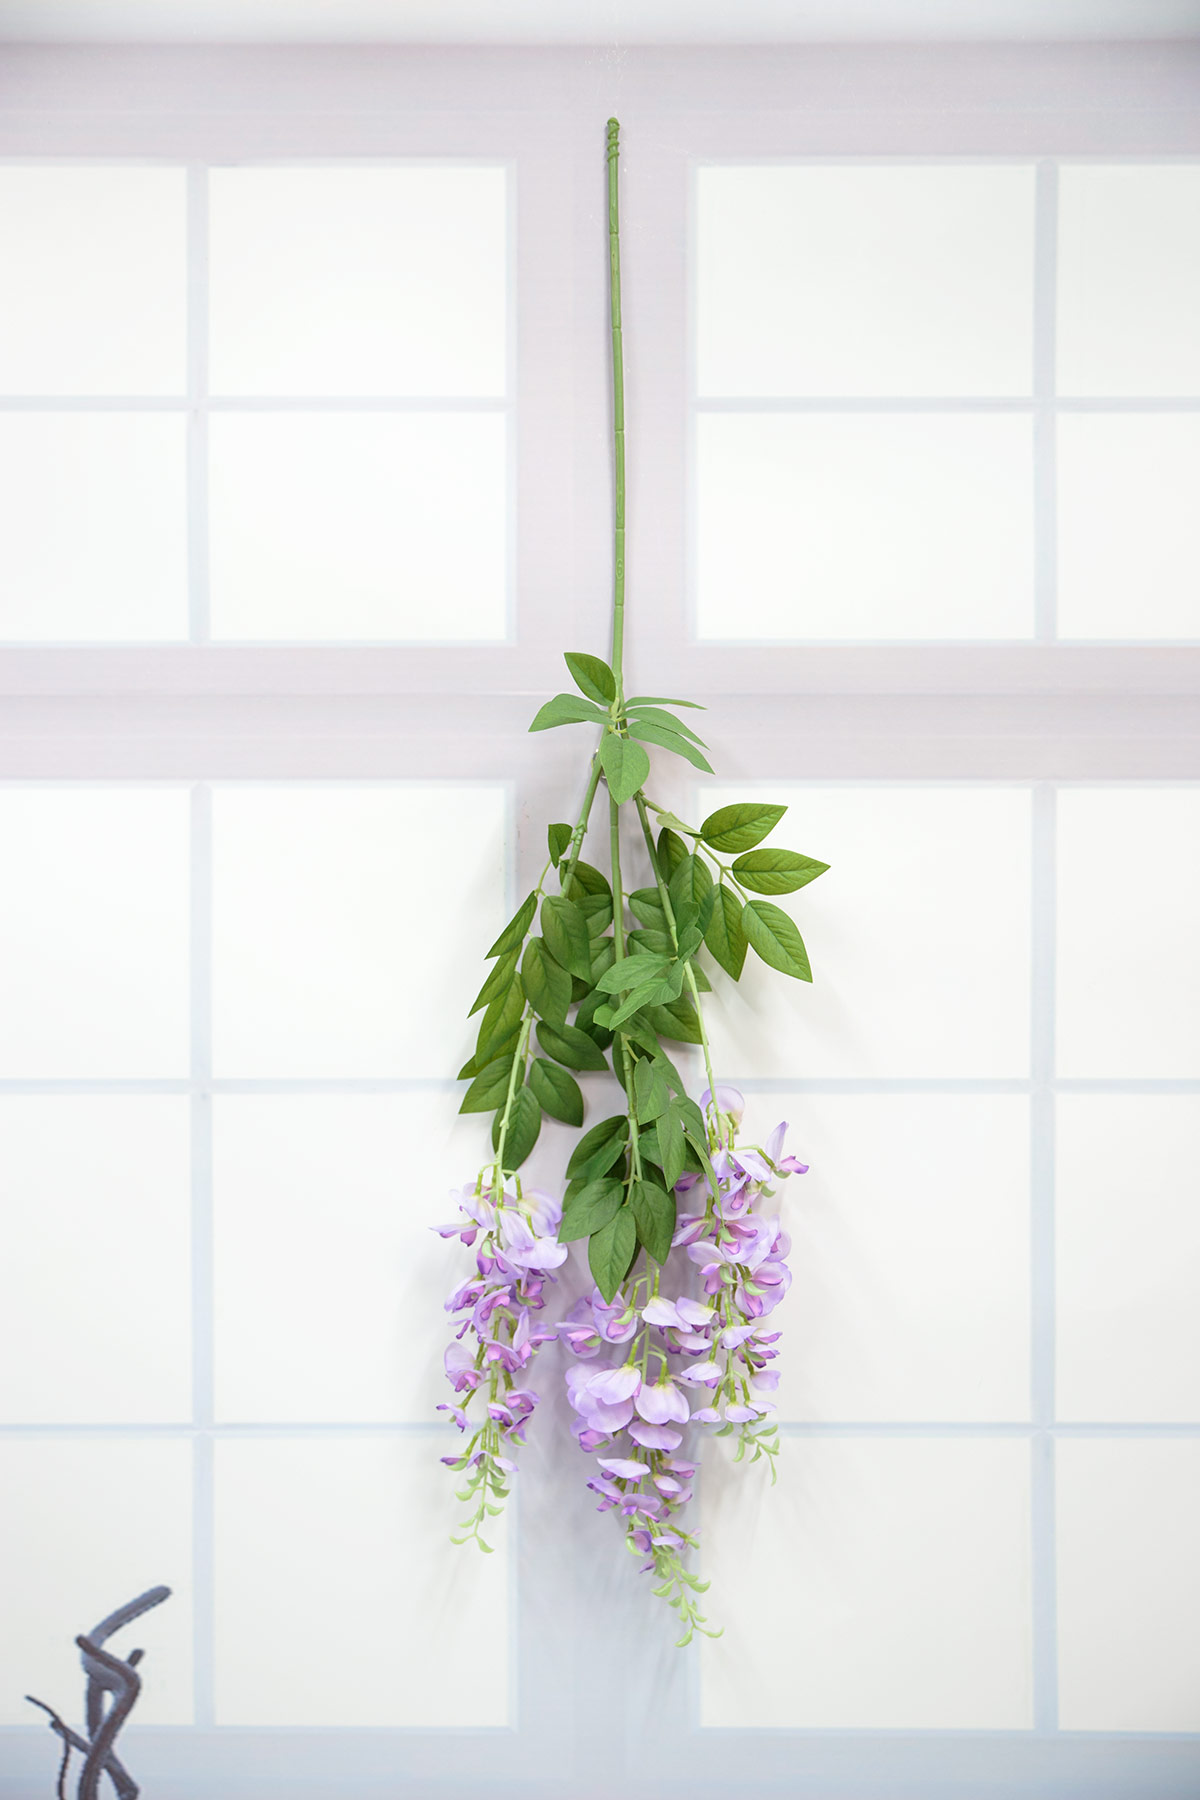 라일락 등꽃가지 거꾸로 벽에 걸어놓은 사진